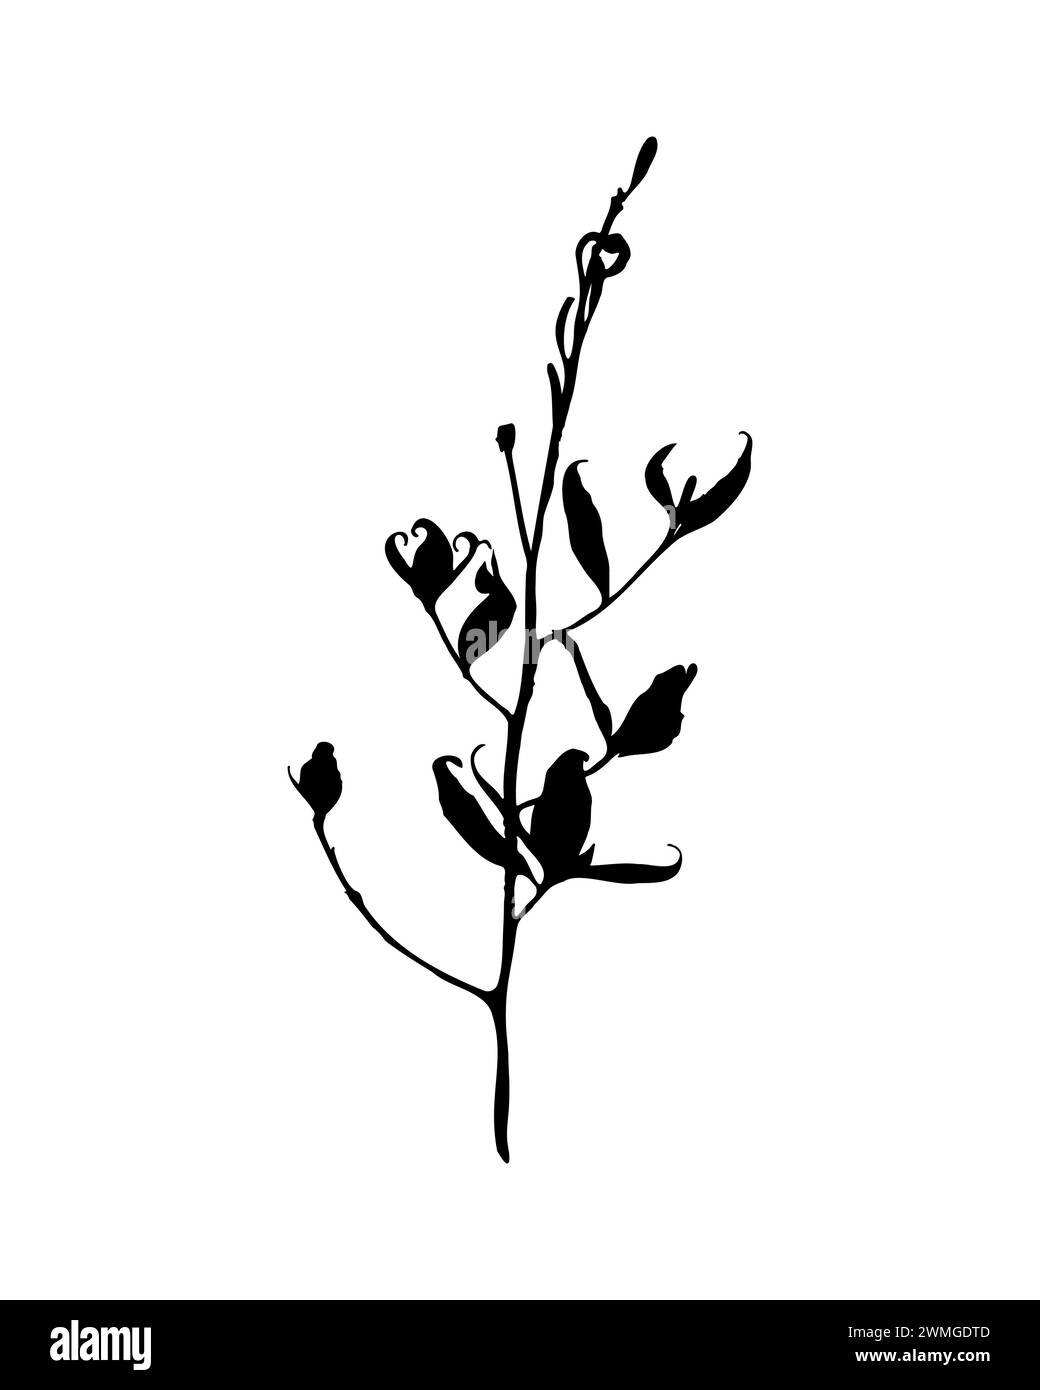 Die zarte Silhouette der Pflanze mit einem eleganten Stamm mit Blättern, die in starkem Kontrast vor reinweißem Hintergrund präsentiert werden und das schlichte einfangen Stock Vektor